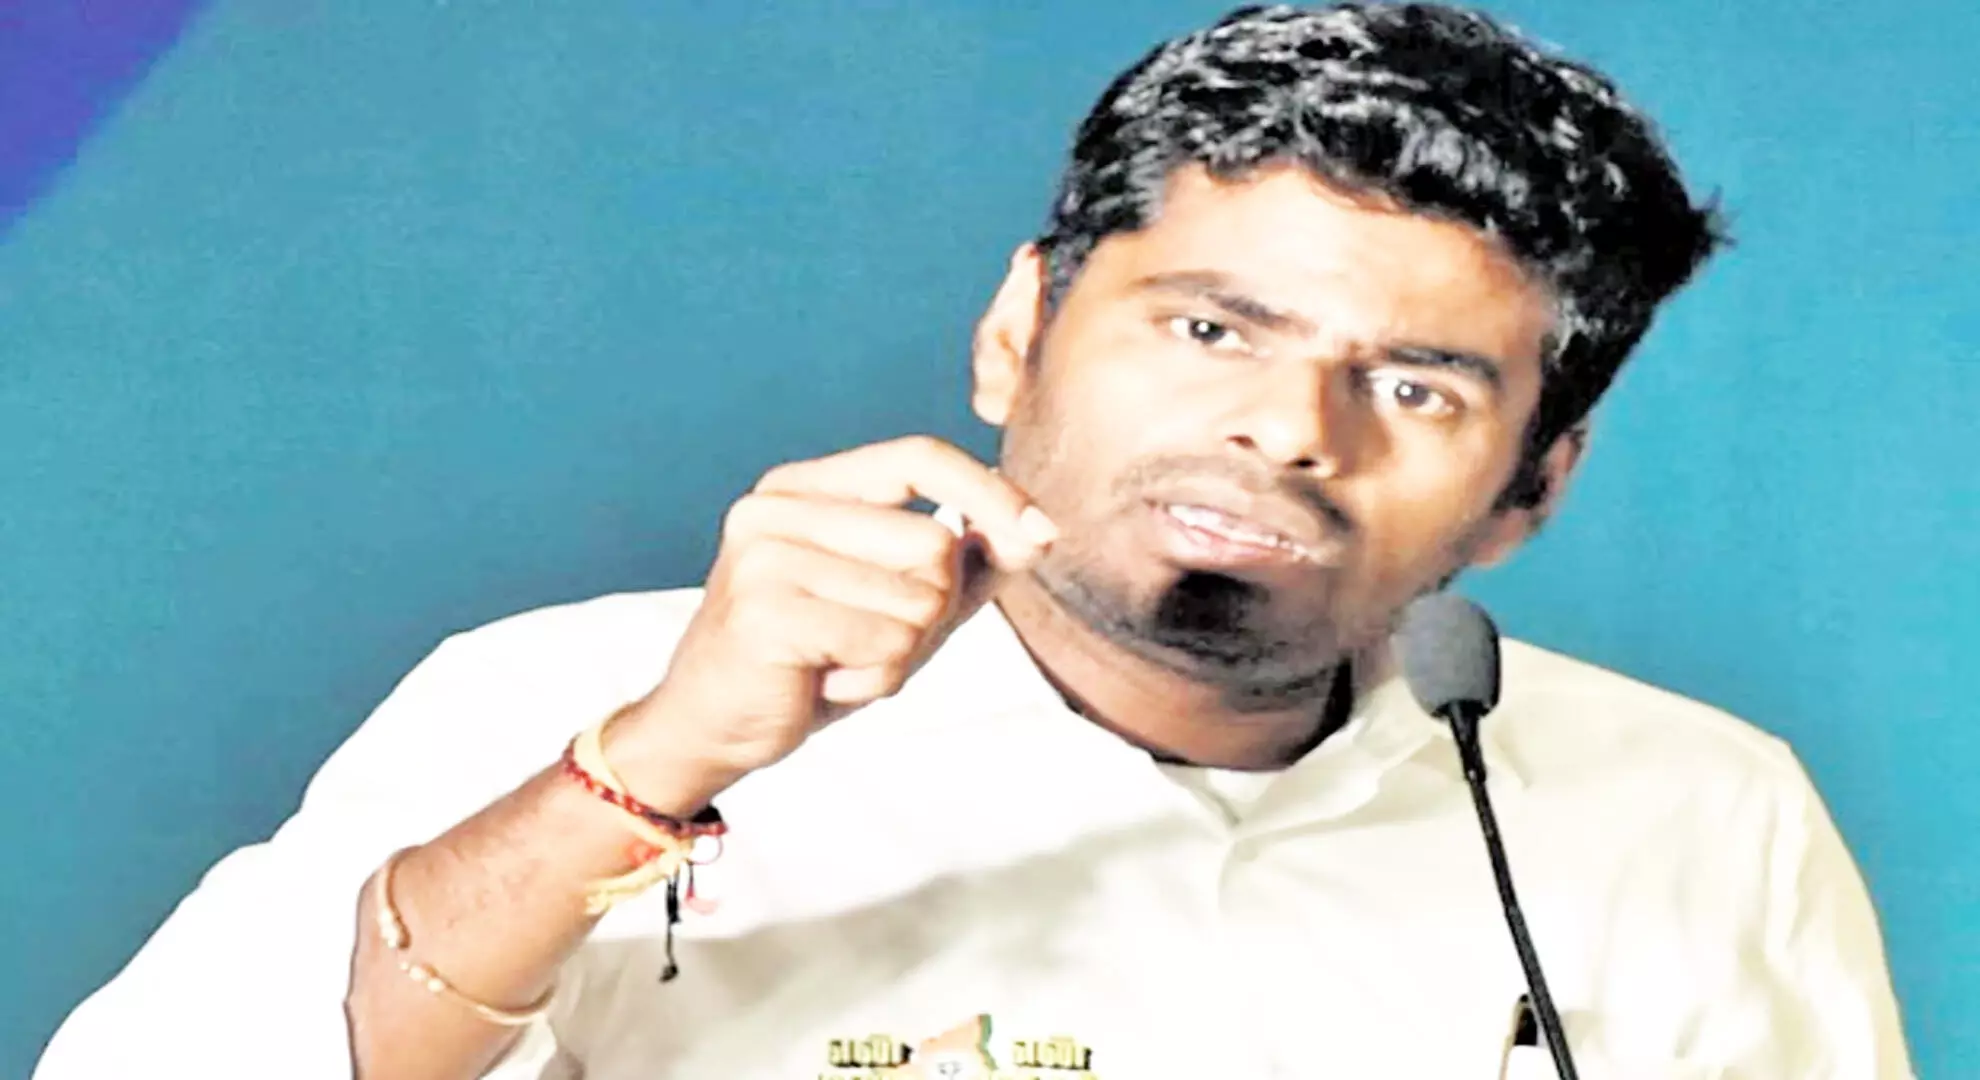 मैं कोवई के लोगों और पीएम मोदी के बीच हॉटलाइन बनूंगा: तमिलनाडु बीजेपी प्रमुख अन्नामलाई